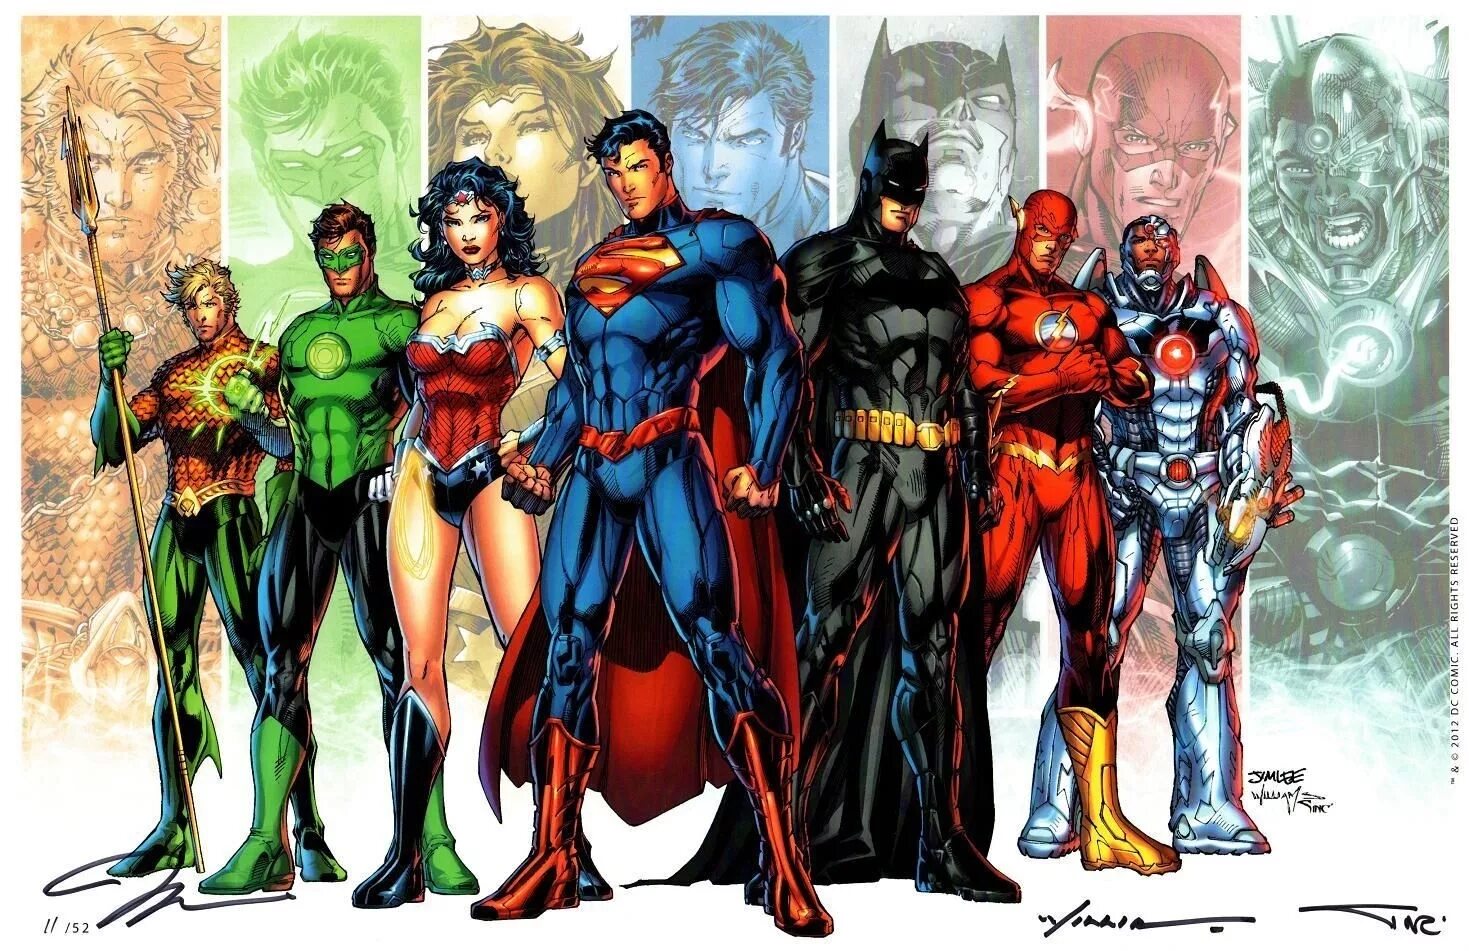 DC Вселенная New 52. Вселенная ДИСИ герои. Лига справедливости Нью 52 комикс. Супергерои Вселенная DC. More justice